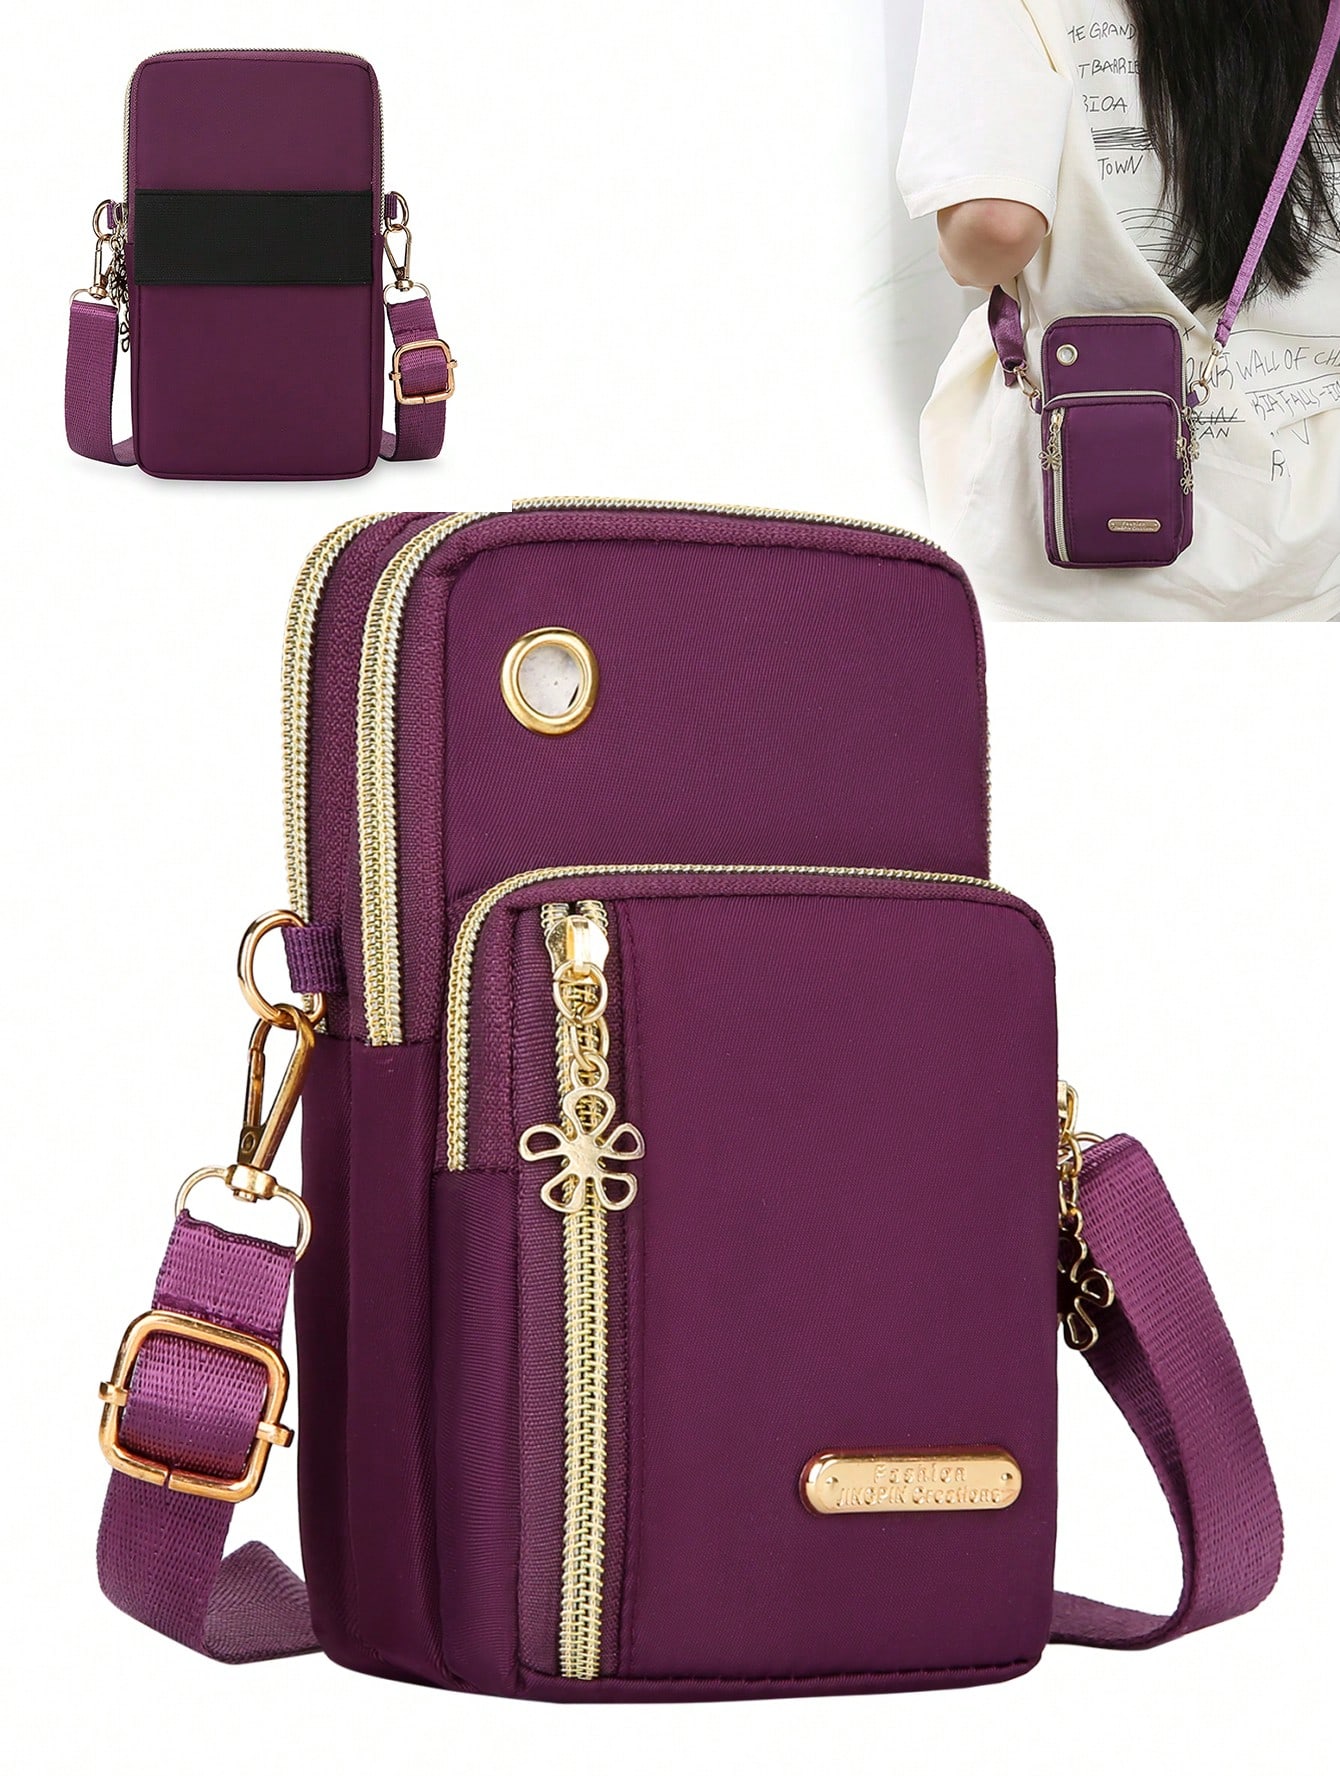 1 шт. новый спортивный кошелек/телефон/сумка/рюкзак/портмоне/брелок/длинный кошелек/сумка через плечо/сумка через плечо, фиолетовый